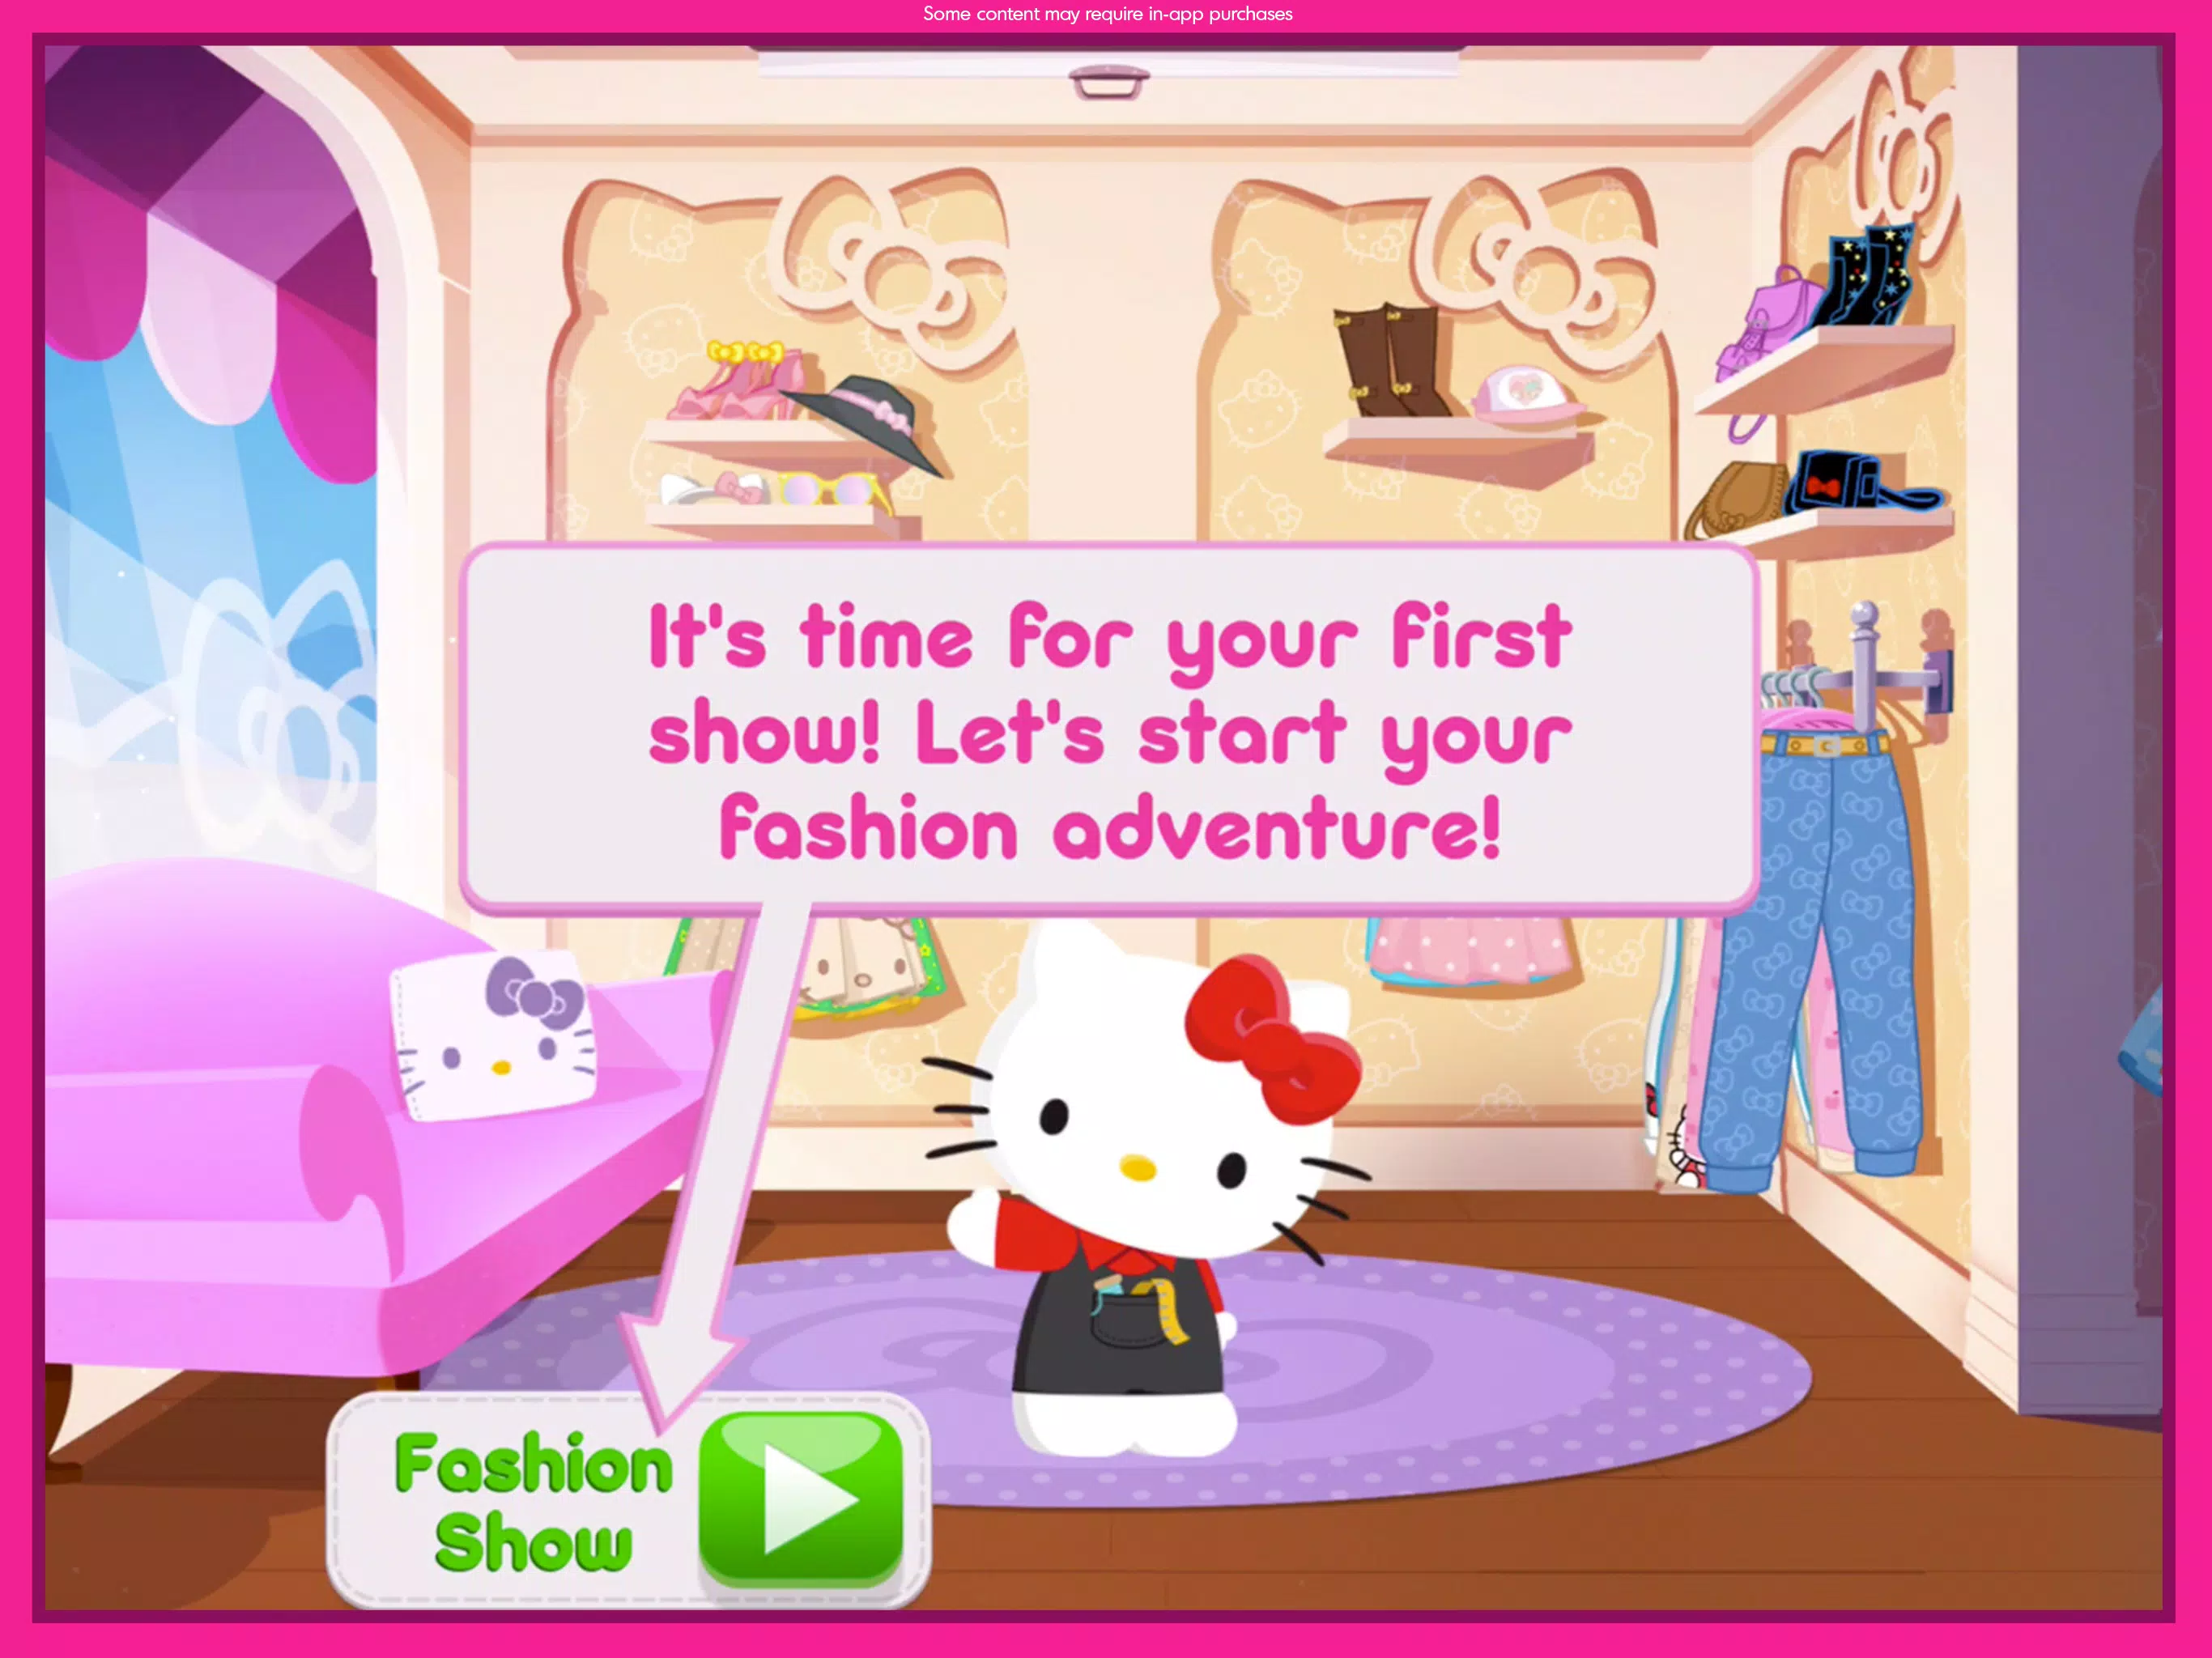 Salão de Beleza Hello Kitty – Apps no Google Play